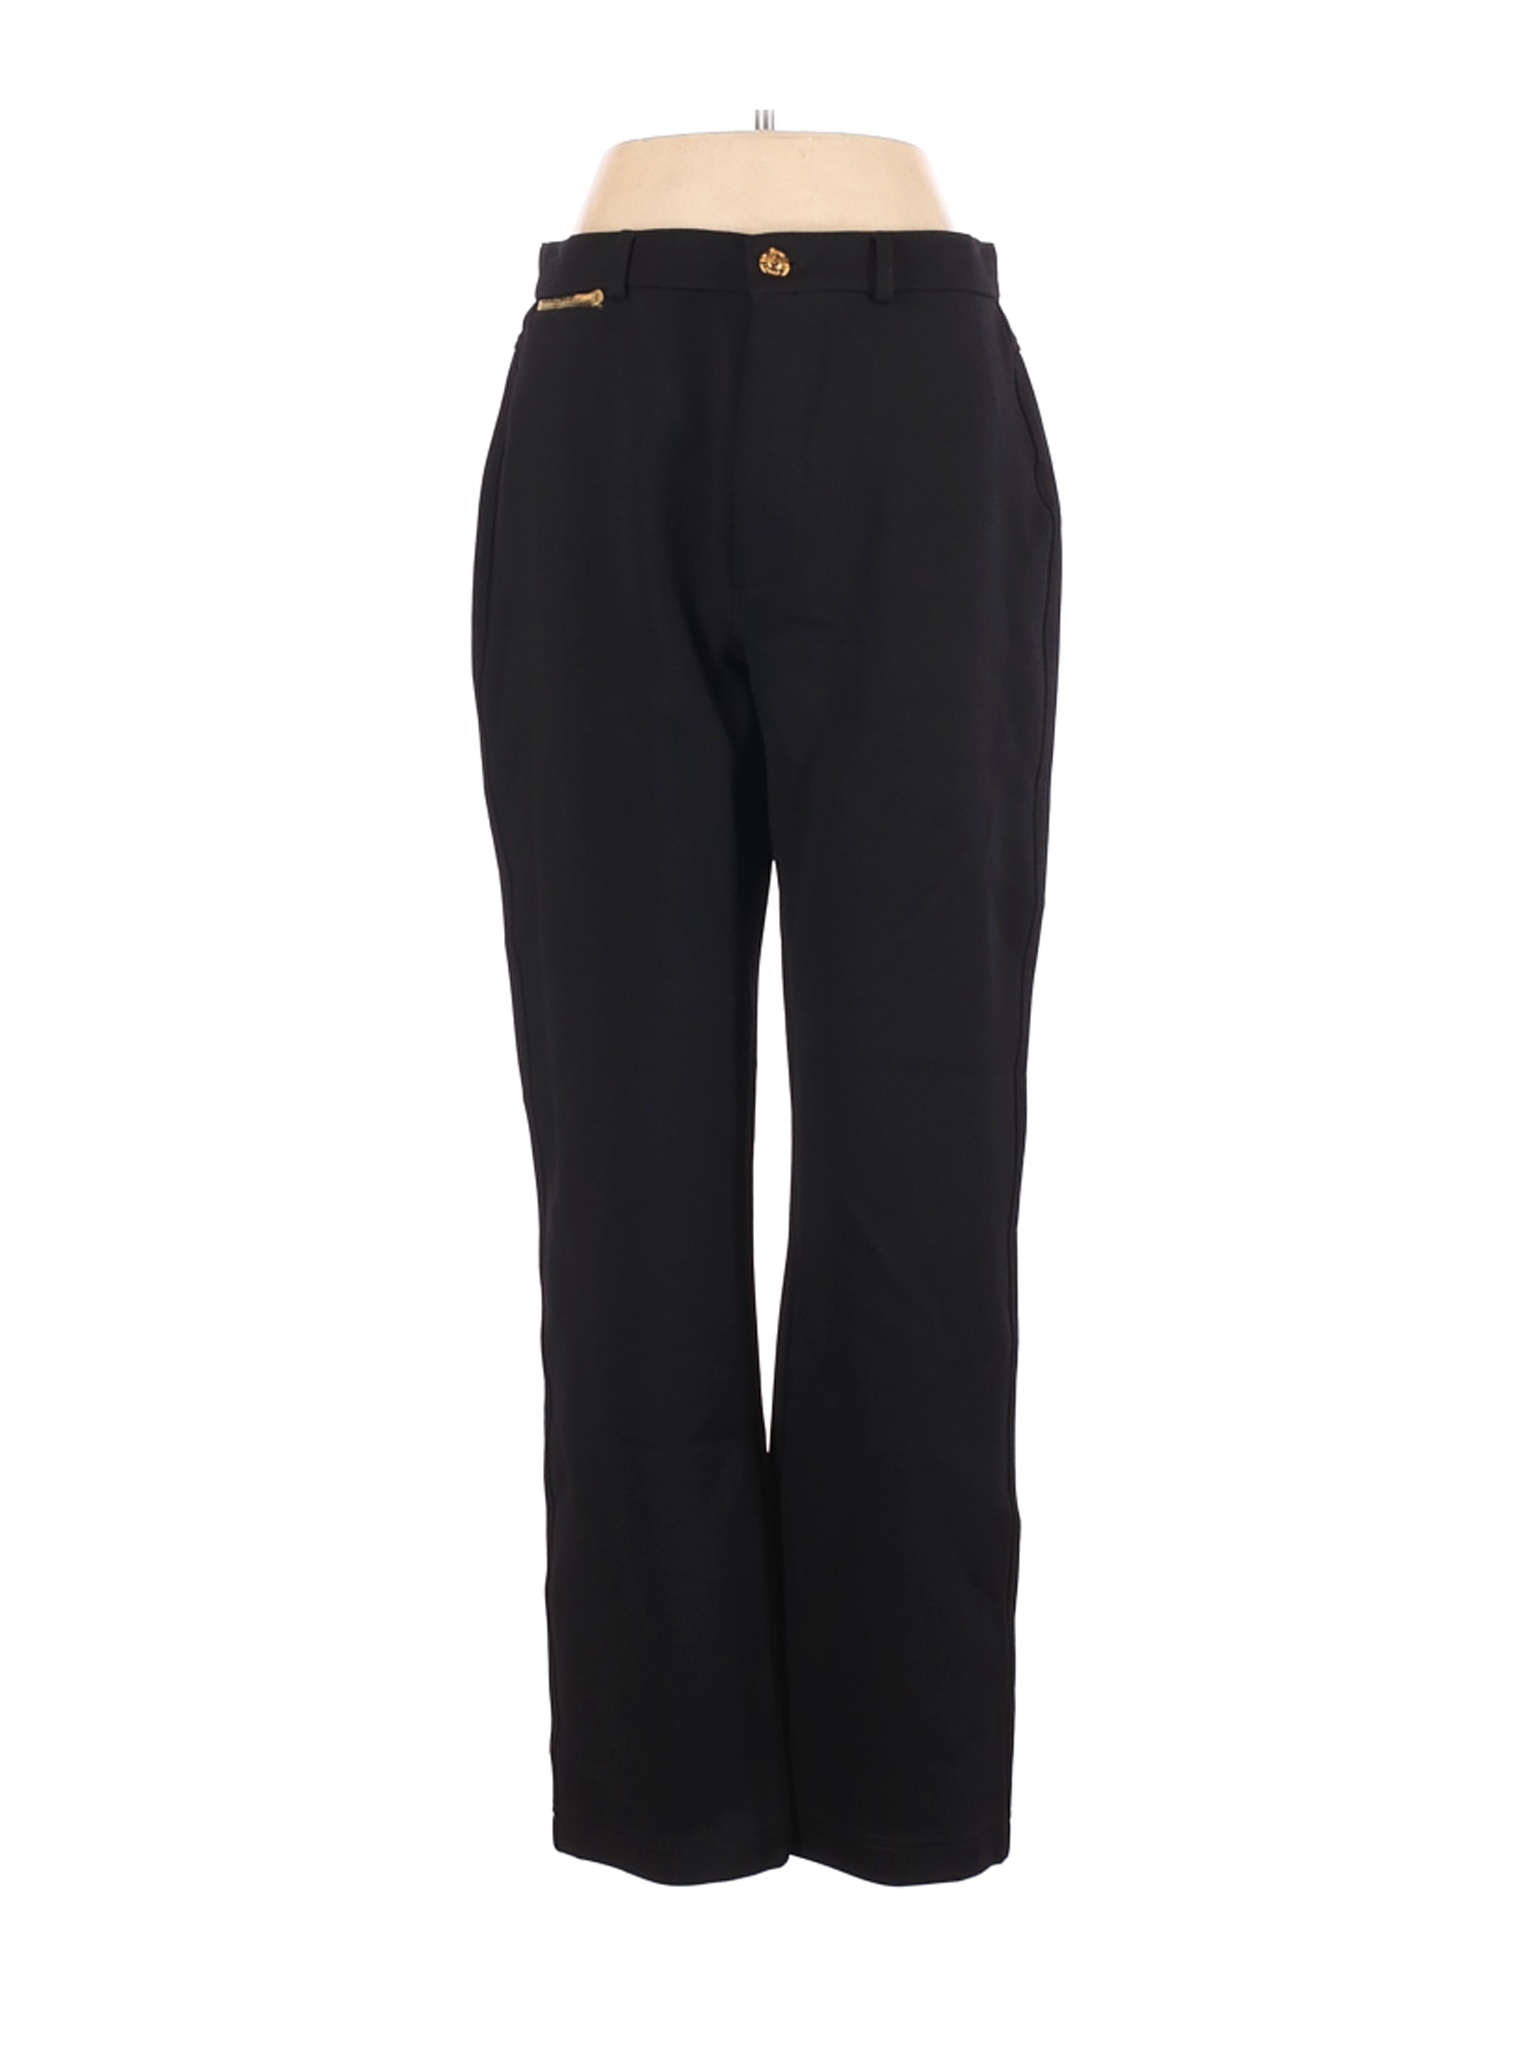 St. John Sport Women Black Casual Pants 8 | eBay